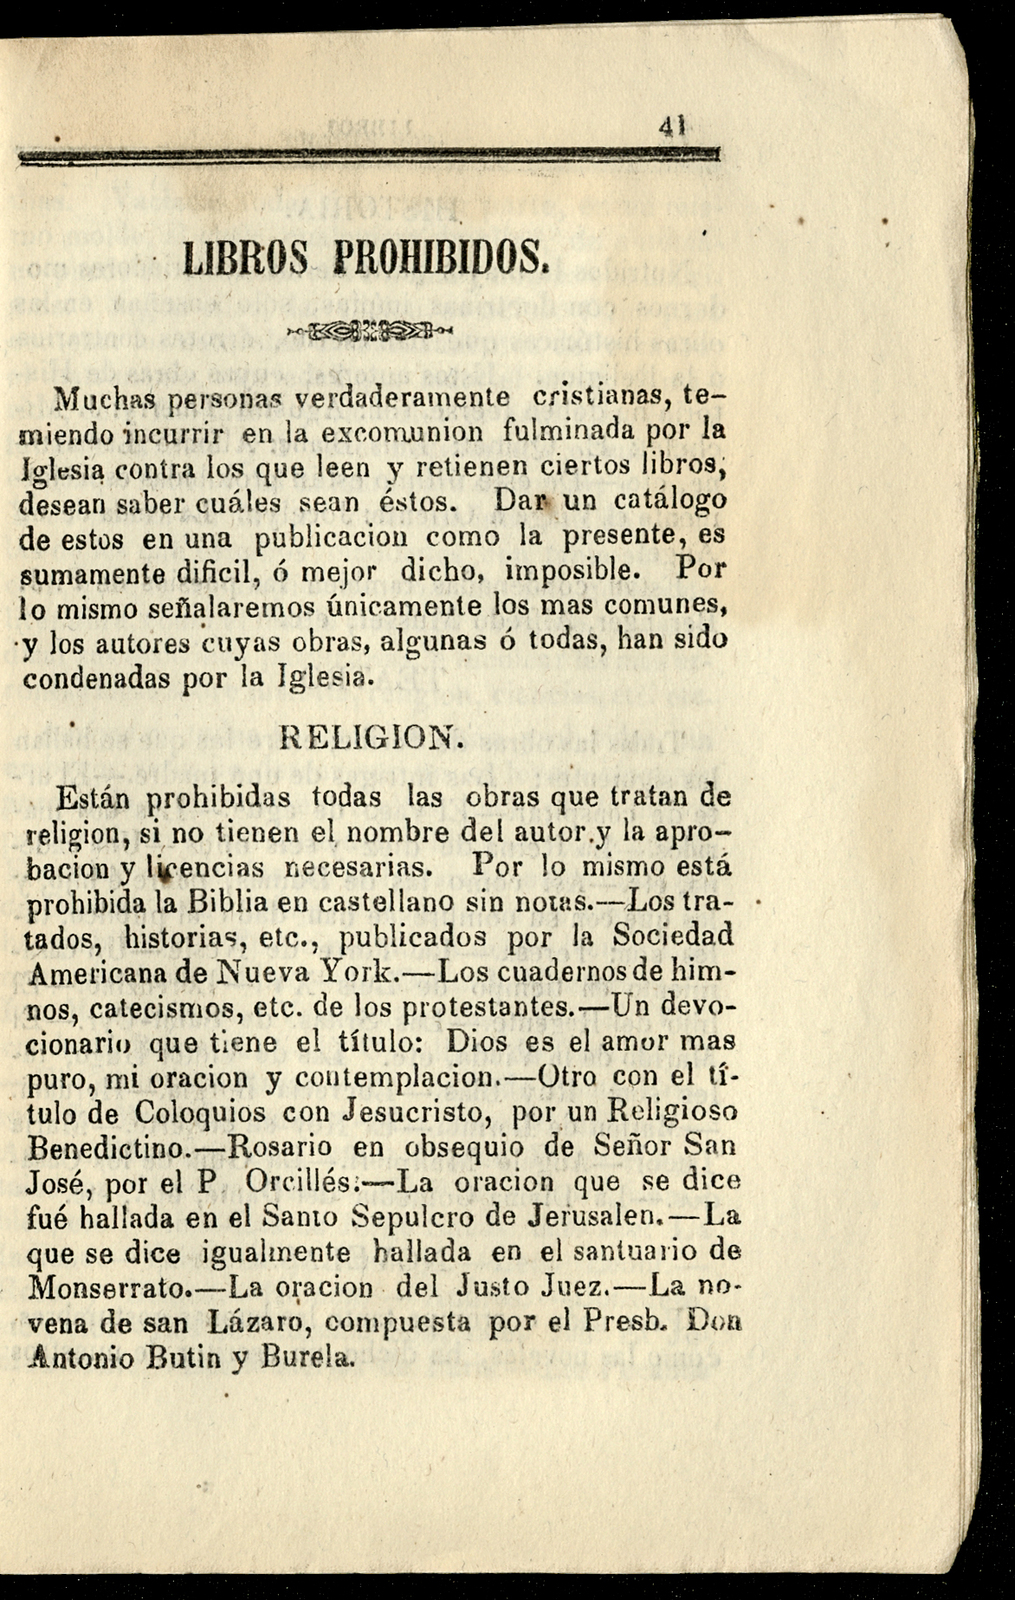 Vigesimotercero Calendario [Angelopolitano], de Rivera, arreglado al meridiano de Puebla, para el año de 1877